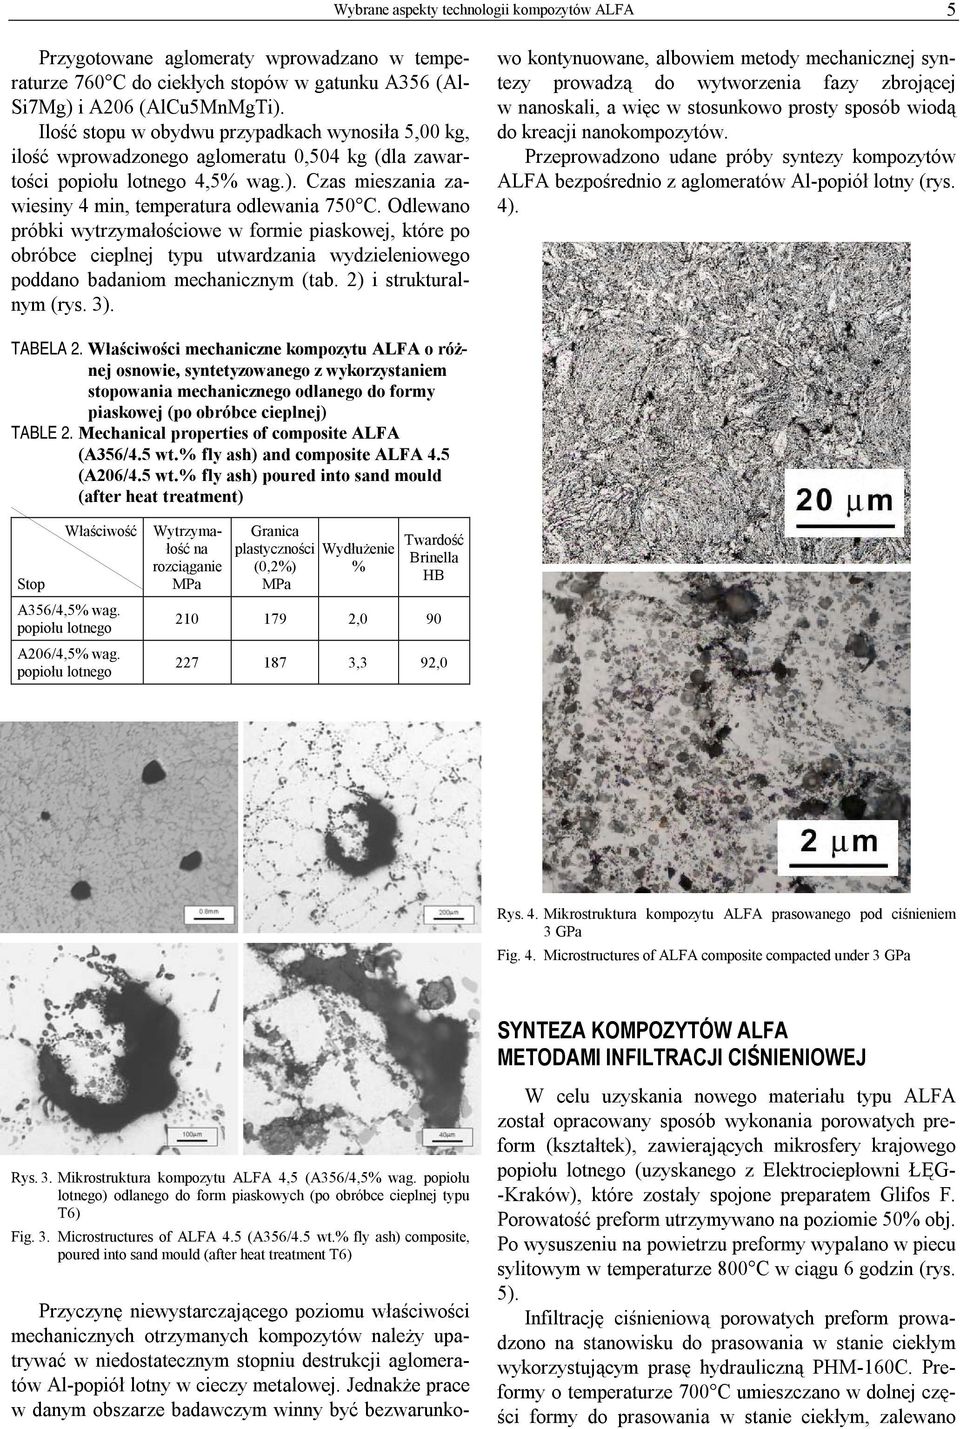 Odlewano próbki wytrzymałościowe w formie piaskowej, które po obróbce cieplnej typu utwardzania wydzieleniowego poddano badaniom mechanicznym (tab. 2) i strukturalnym (rys. 3).